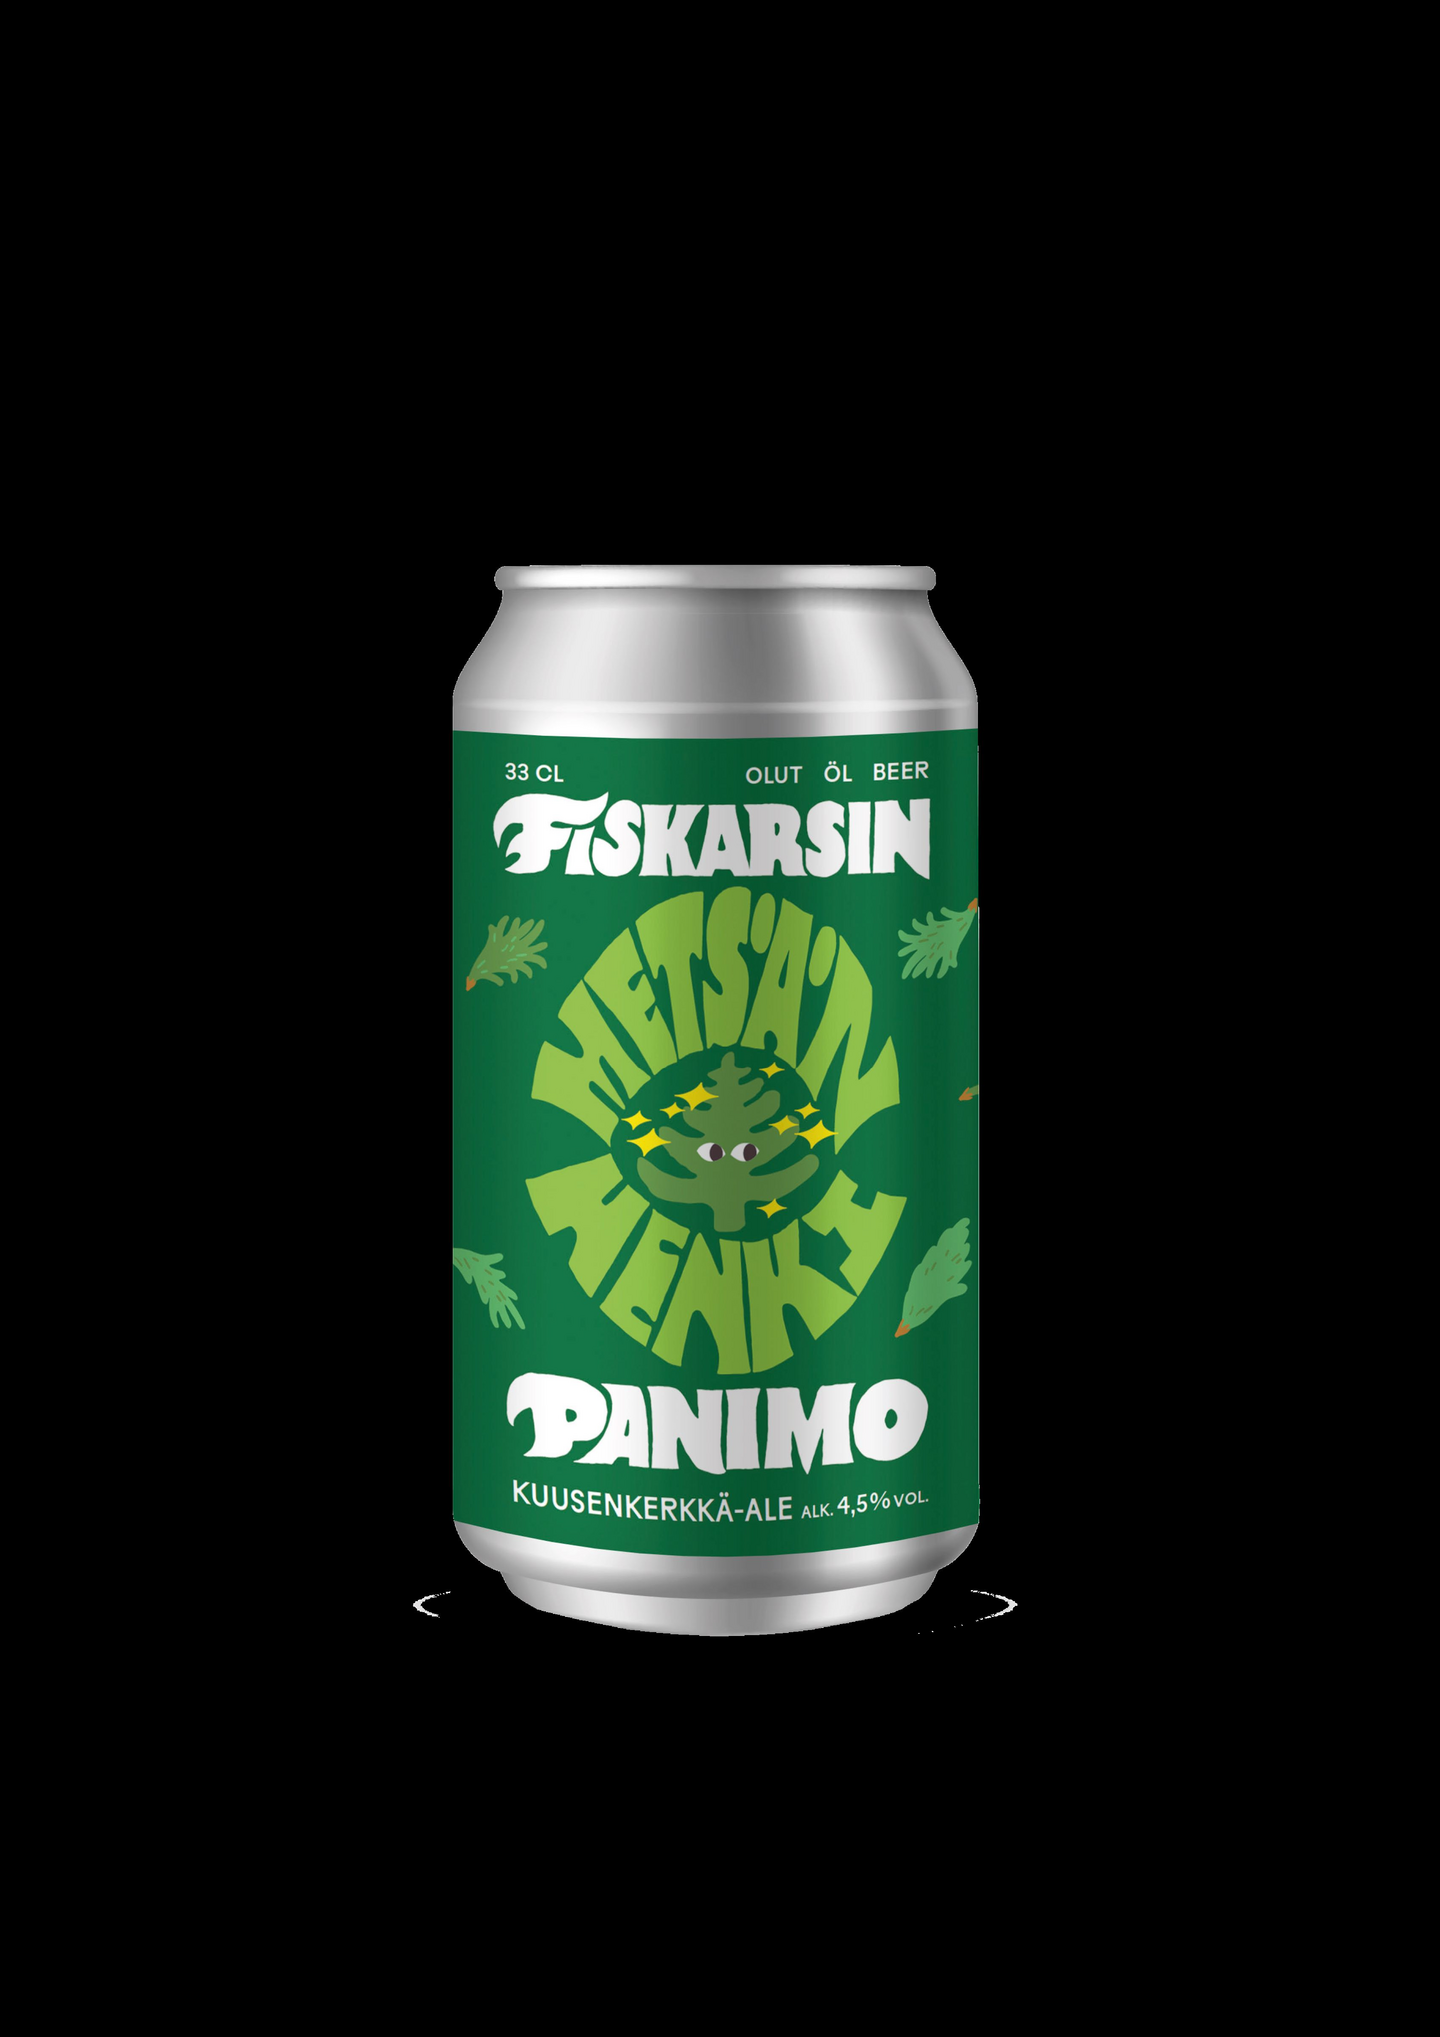 Fiskarsin Panimo Metsän Henki Ale olut 4,5% 0,33l